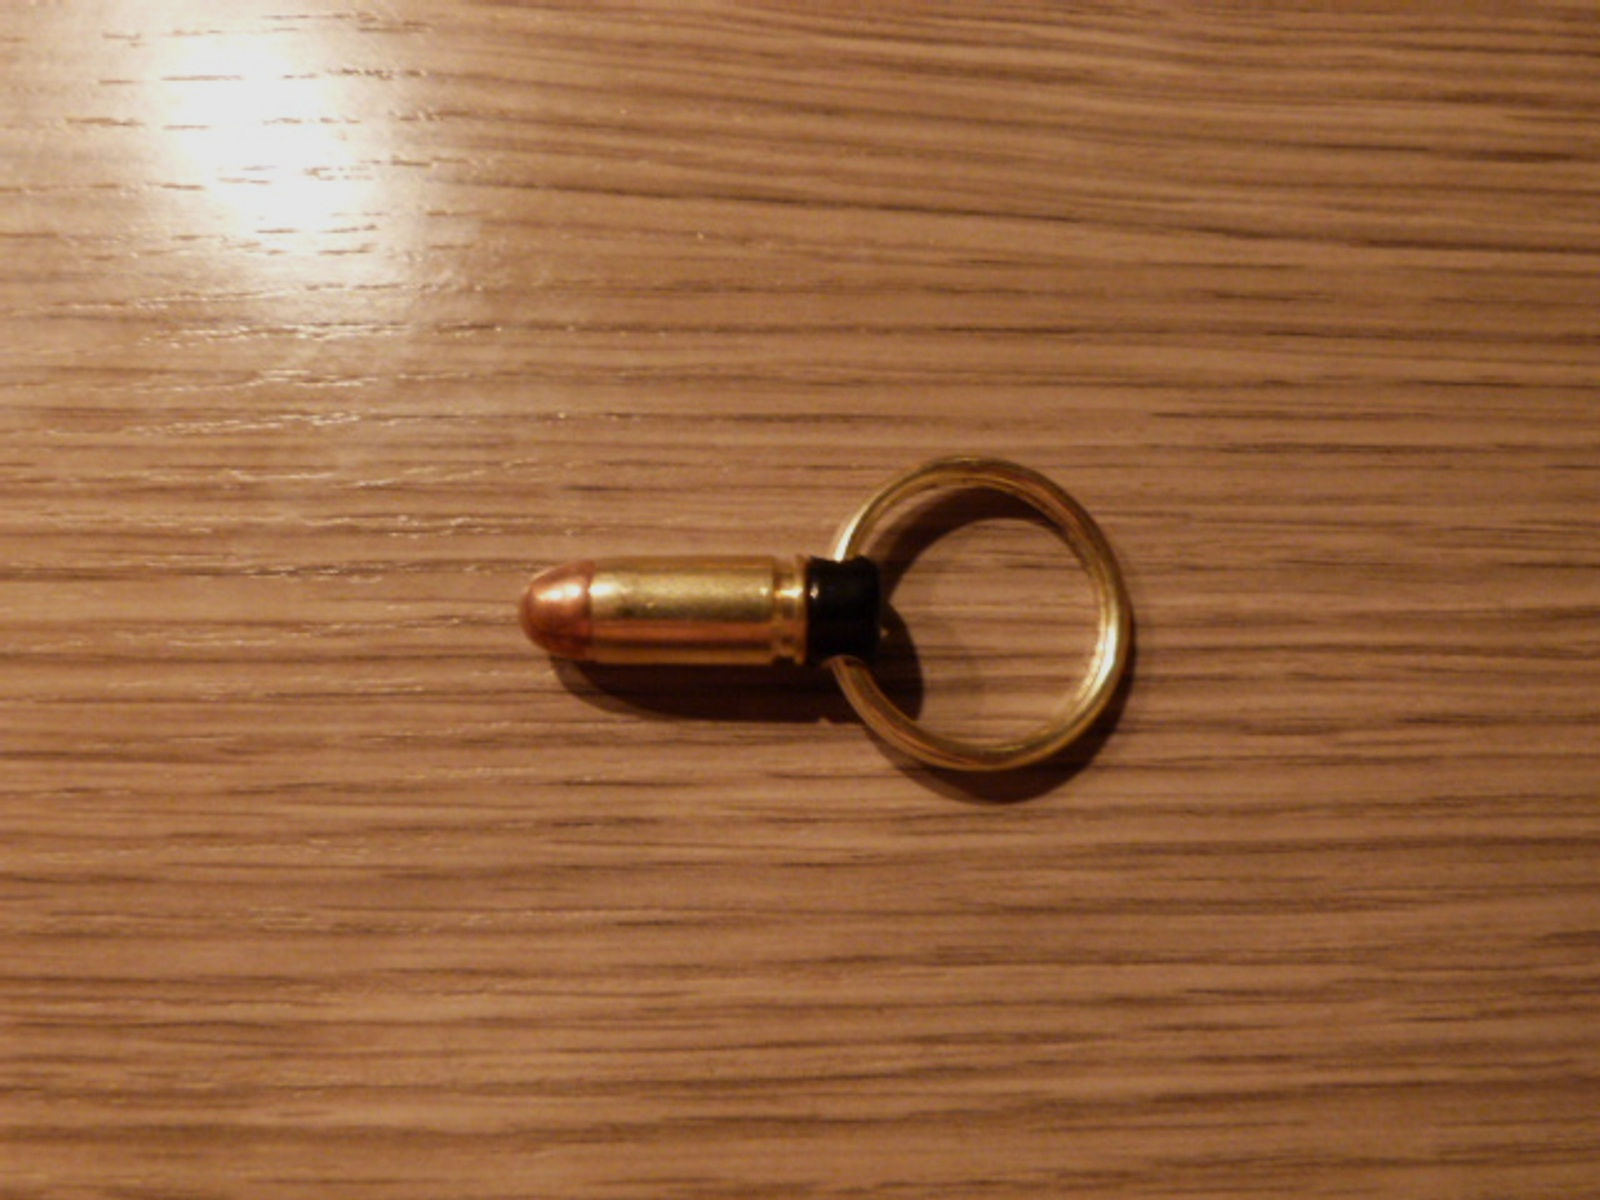 Schlüsselanhänger 9mm Makarov